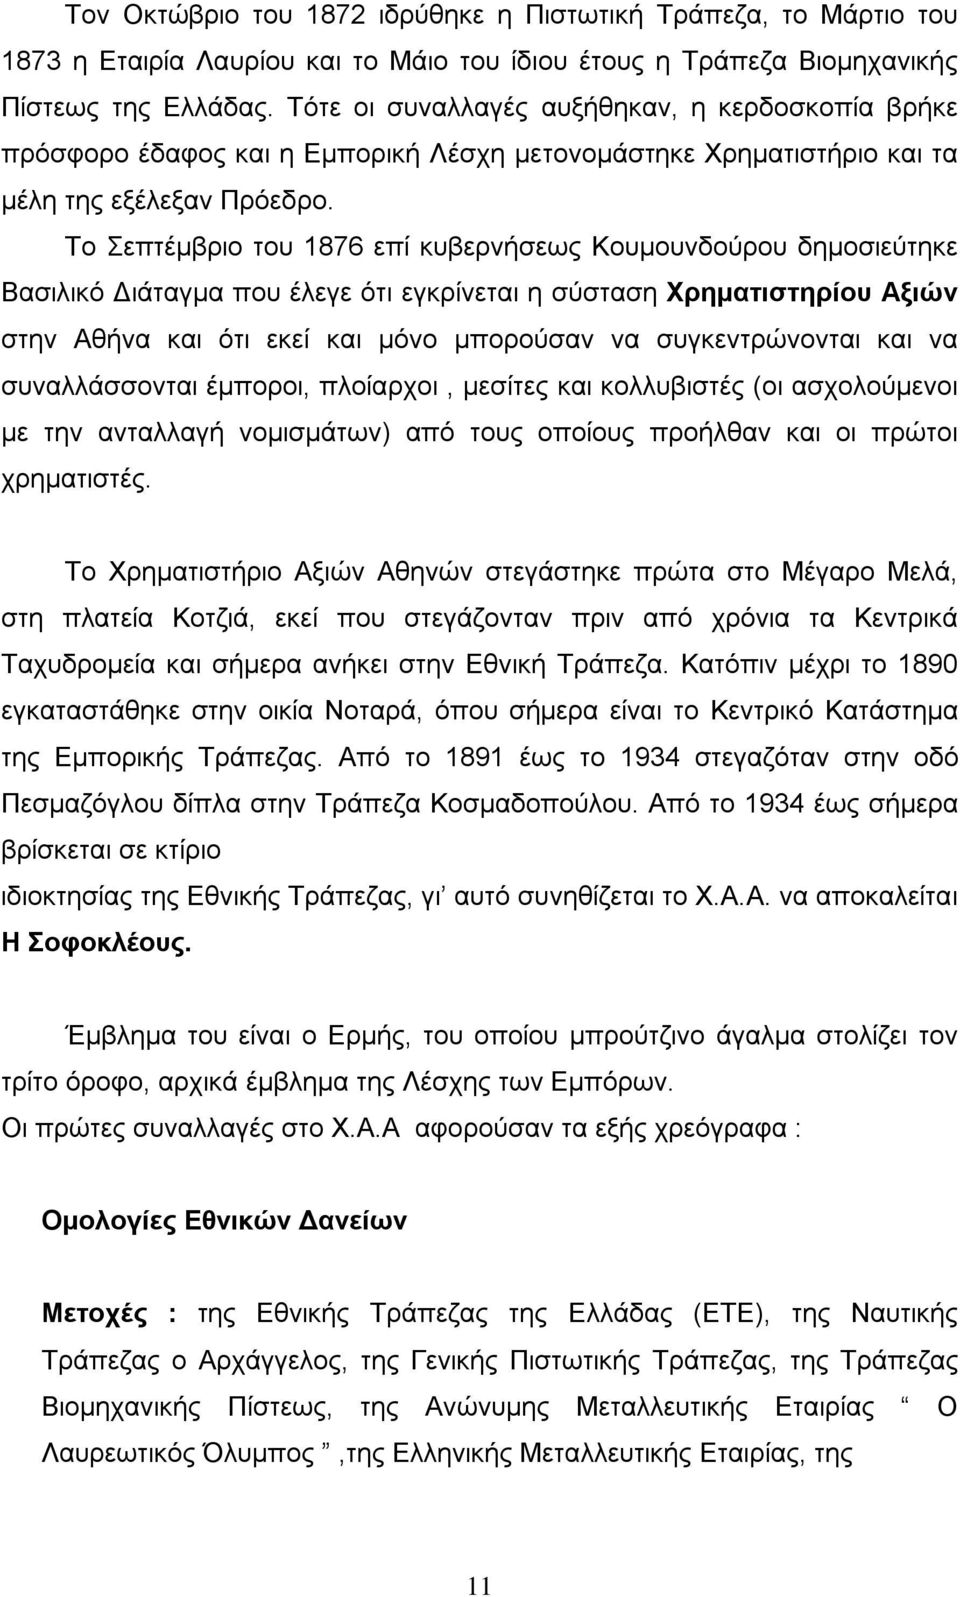 Το Σεπτέμβριο του 1876 επί κυβερνήσεως Κουμουνδούρου δημοσιεύτηκε Βασιλικό Διάταγμα που έλεγε ότι εγκρίνεται η σύσταση Χρηματιστηρίου Αξιών στην Αθήνα και ότι εκεί και μόνο μπορούσαν να